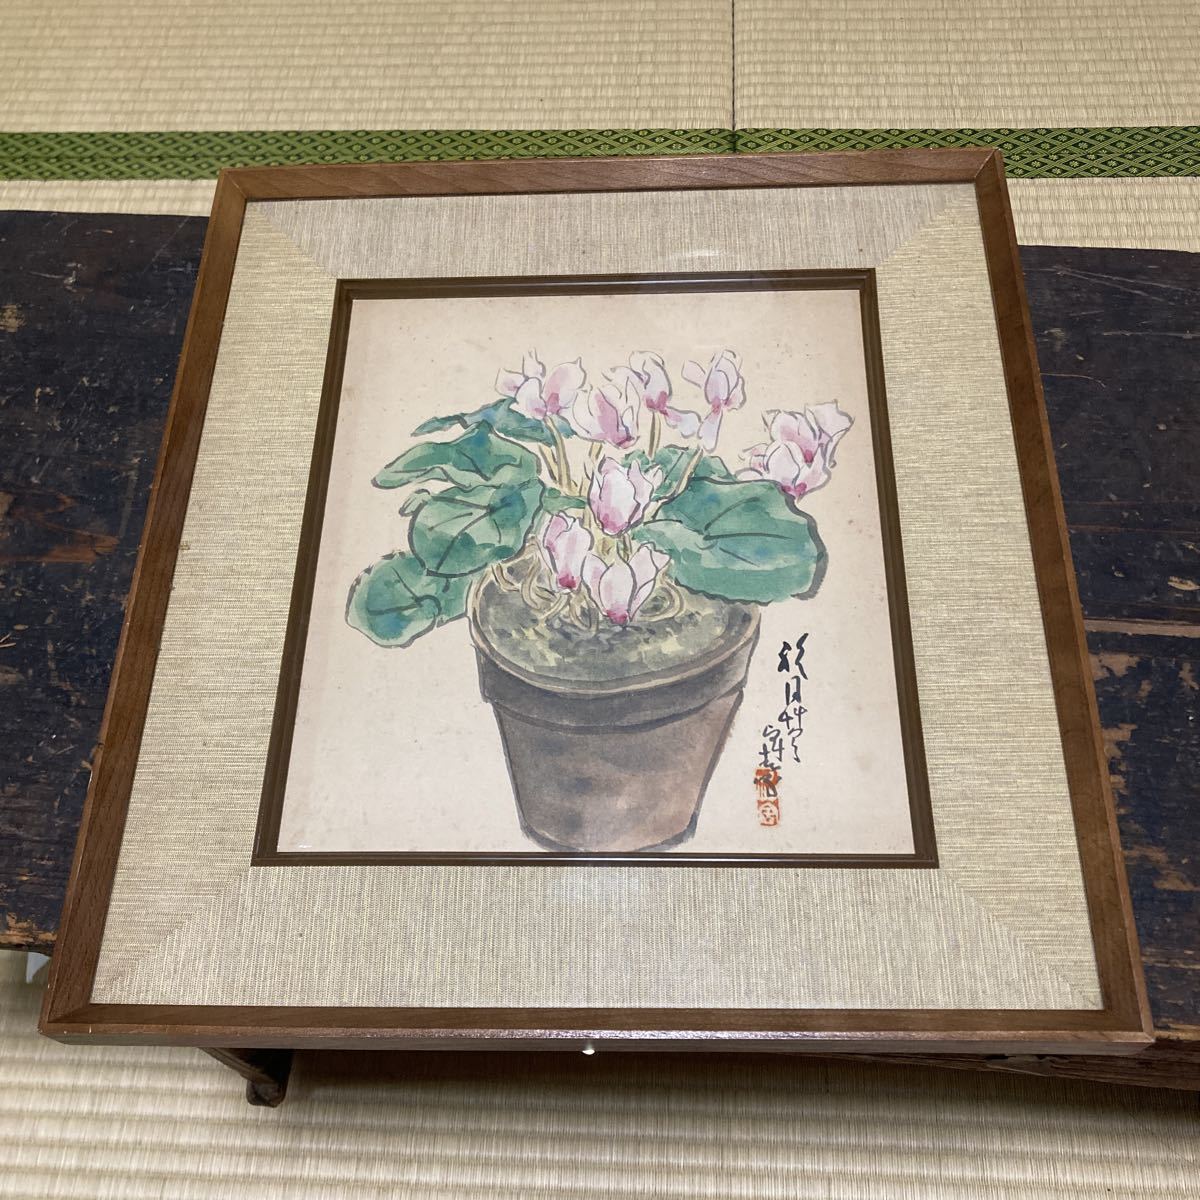 Détails inconnu Peinture japonaise Manuscrit Signé Peinture de fleurs Peinture Taille du cadre 40 cm x 36, 5 cm Ancienne collection de peintures Objet organisé, peinture, Peinture japonaise, fleurs et oiseaux, oiseaux et bêtes